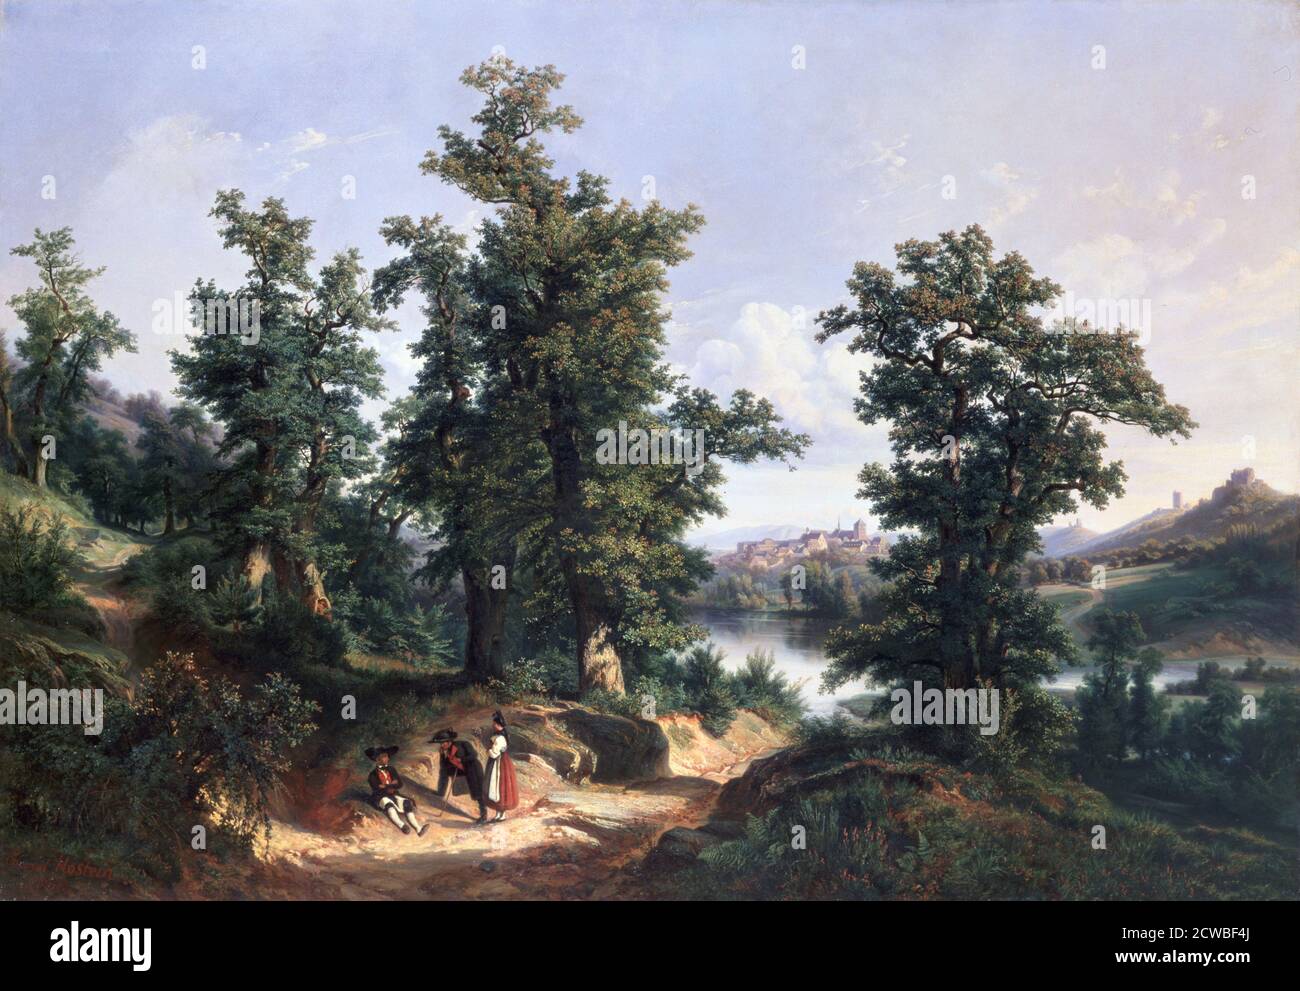 Eintritt in den Wald von Saverne', 1838. Künstler: Edouard Jean Marie Hostein. Edouard Jean Marie Hostein (1804-1889) war ein französischer Landschaftsmaler. Stockfoto